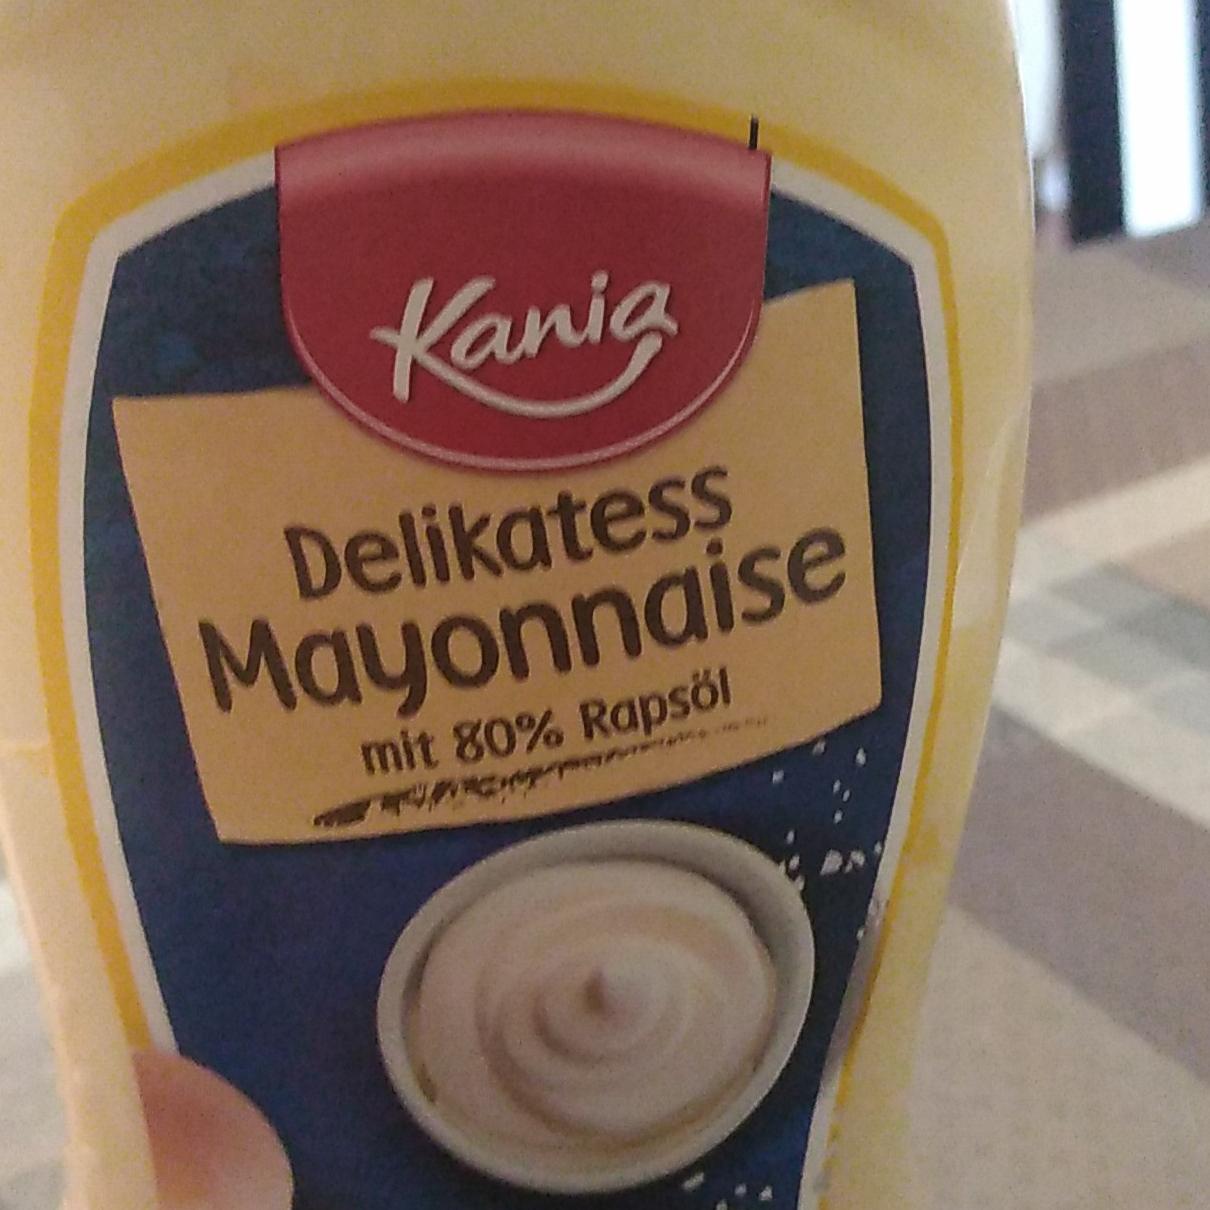 Delikatess mayonaise - hodnoty a kJ kalorie, Kania nutriční